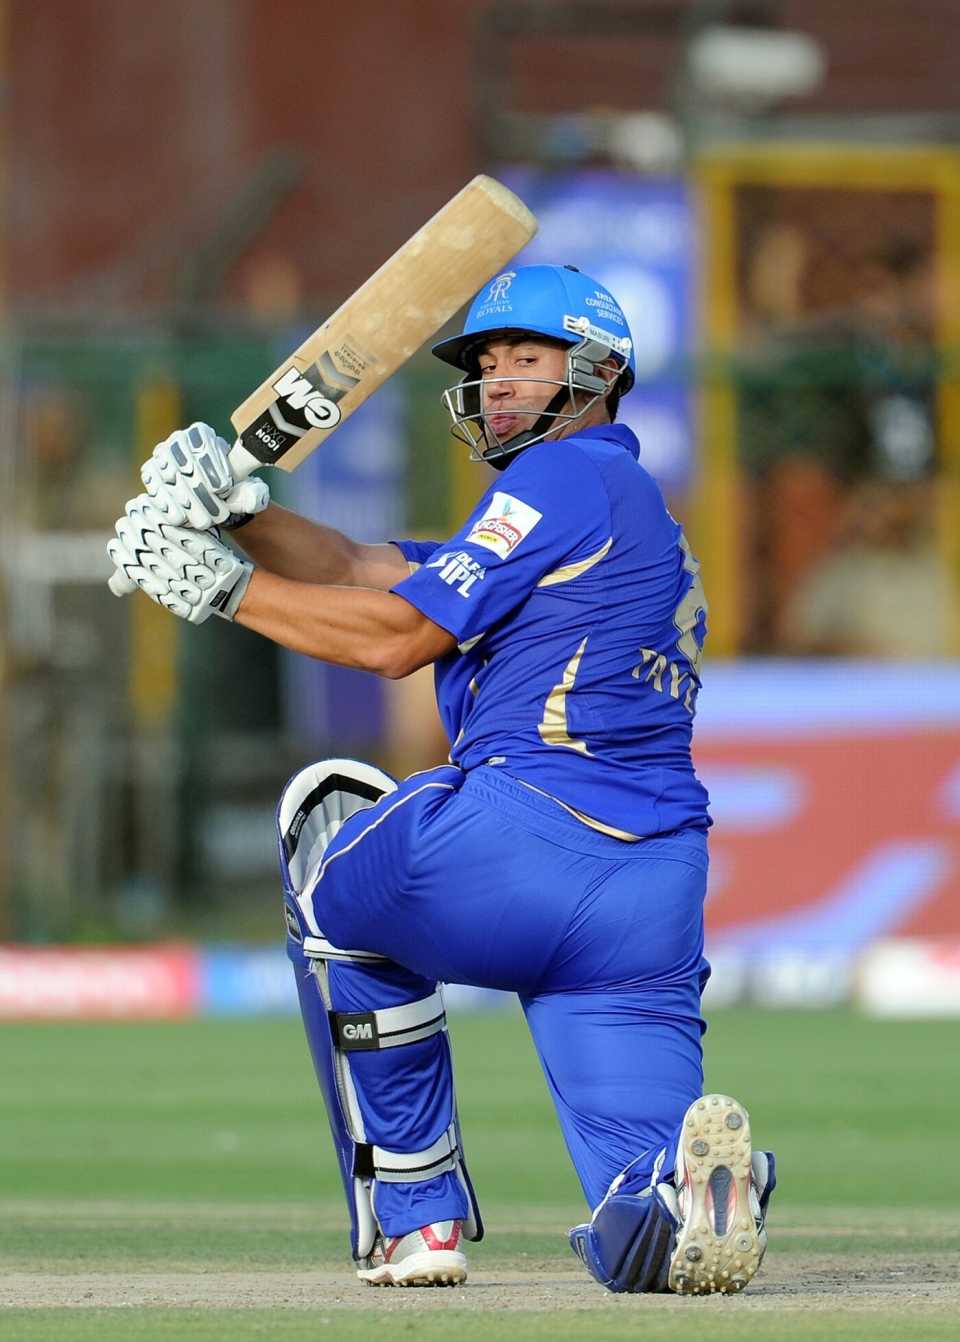 Ross Taylor bats for Rajasthan Royals, Rajasthan Royals vs Kolkata Knight Riders, IPL 2011, Jaipur, April 15, 2011